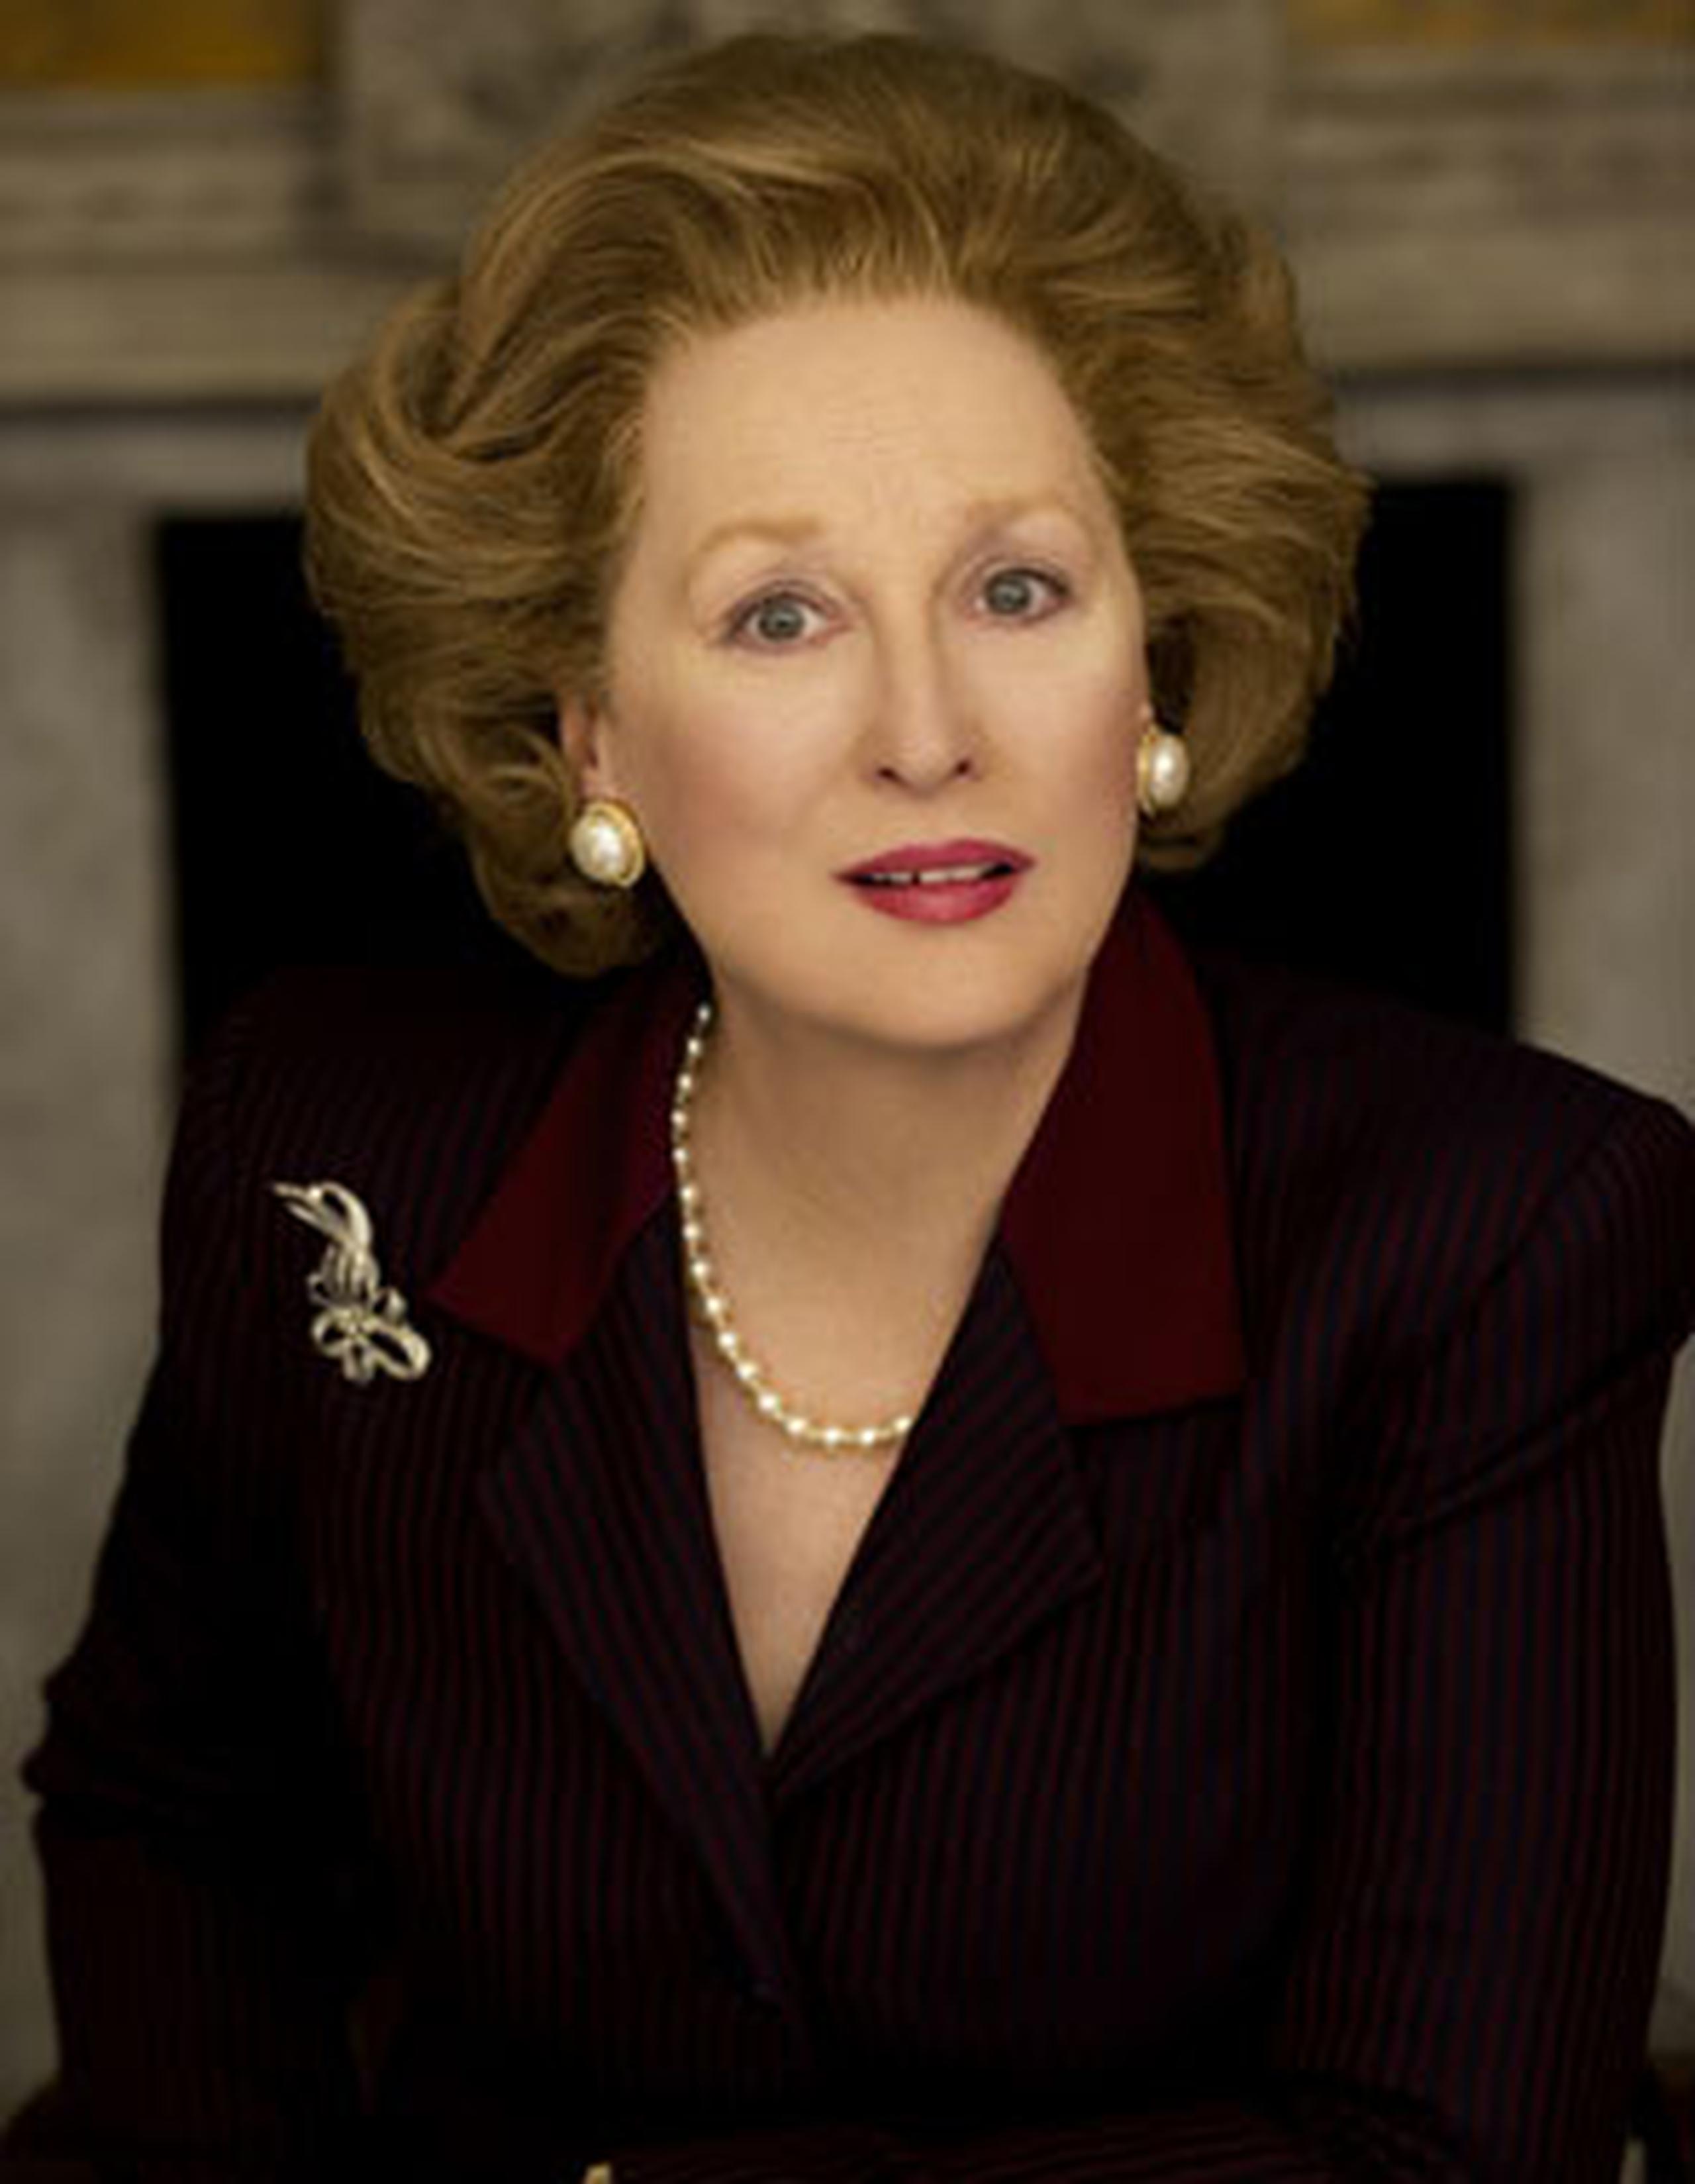 Streep, de 63 años, en 2012 interpretó a Margaret en "The Iron Lady", una retrospectiva sobre la vida y su carrera política. (AP)